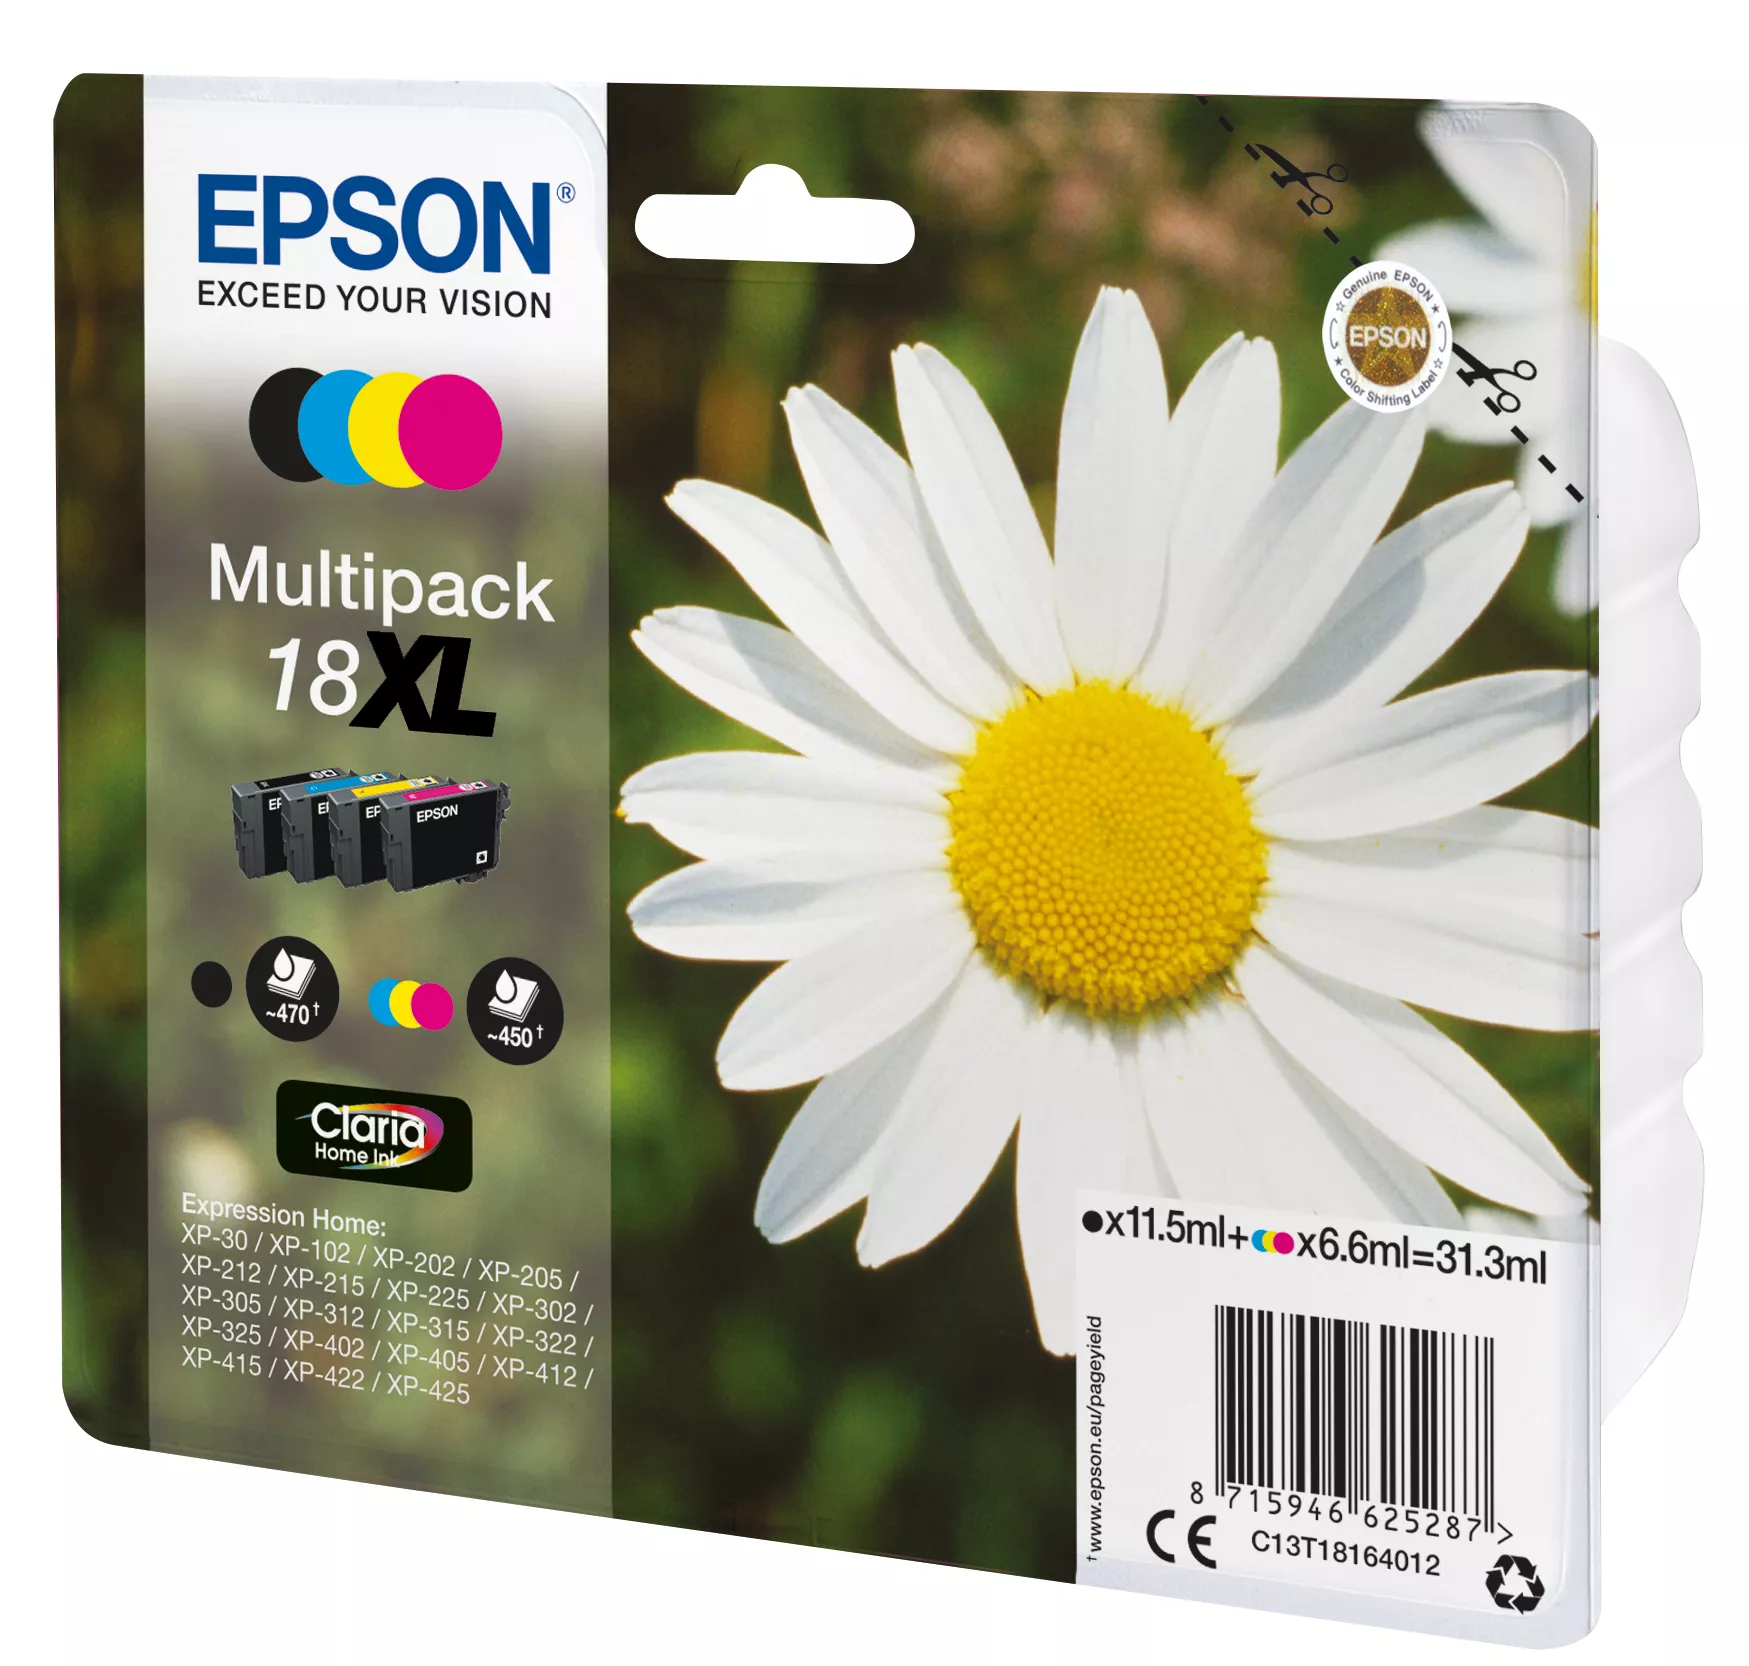 Vente EPSON 18XL cartouche encre noir et tricolore haute Epson au meilleur prix - visuel 2